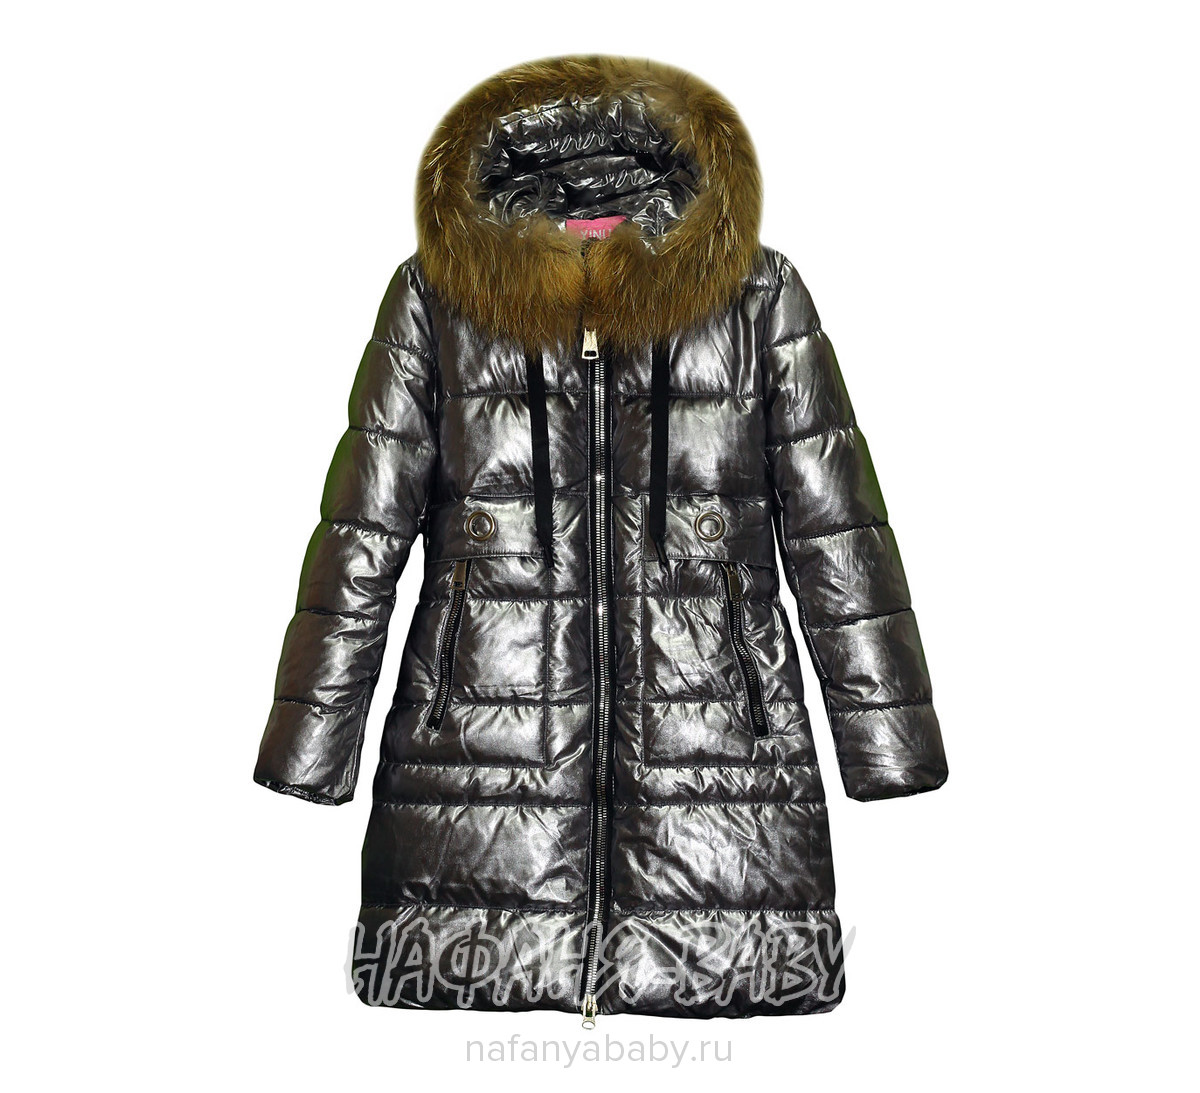 Зимнее подростковое пальто YINUO, купить в интернет магазине Нафаня. арт: 8810.